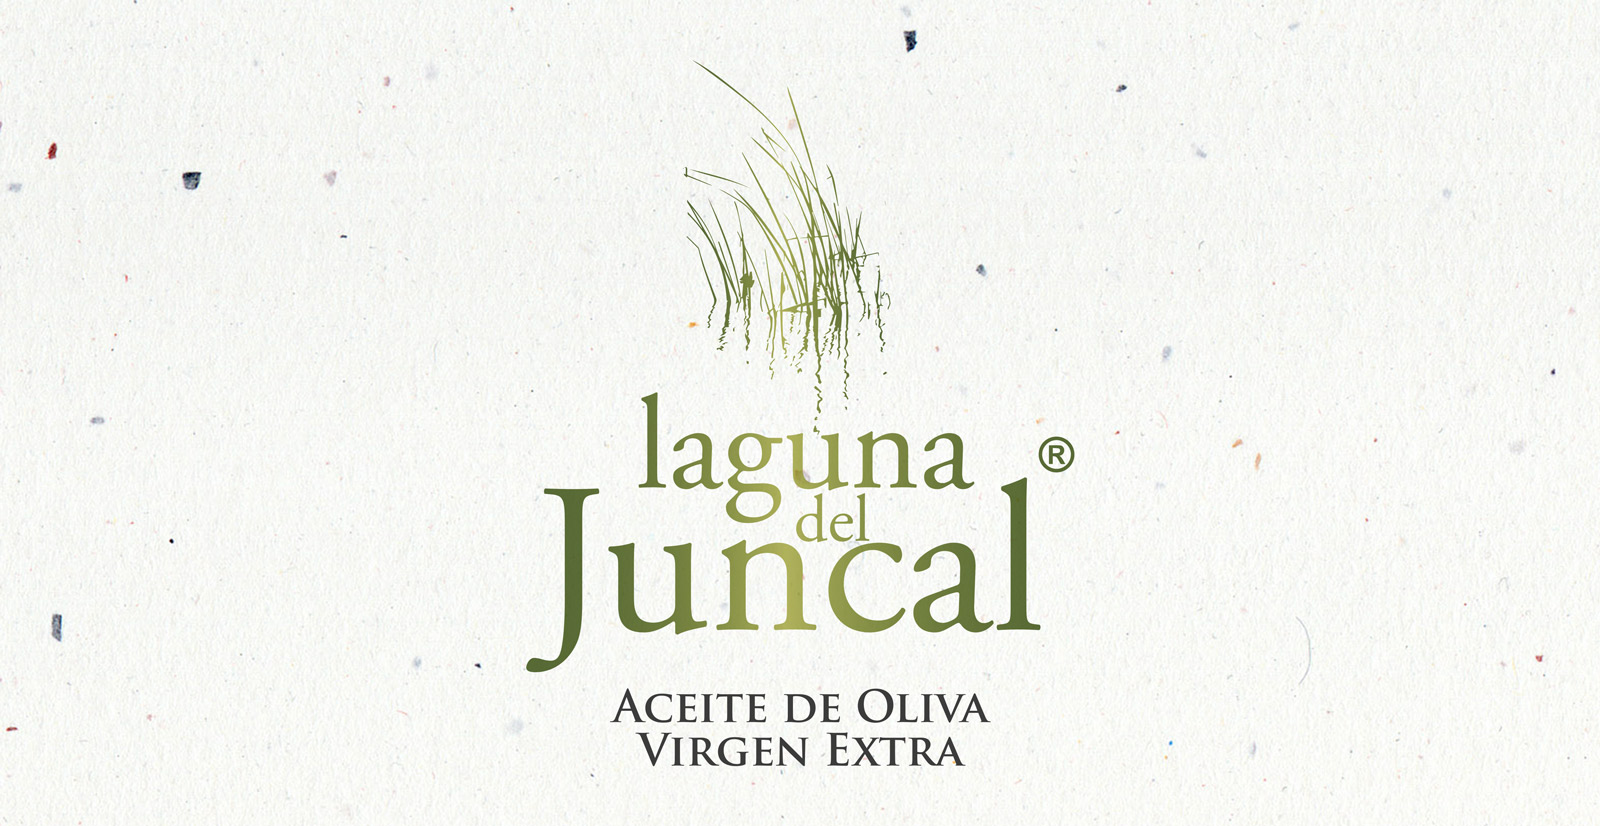 Diseño de logo para productora y embotelladora de aceite de oliva virgen extra en Argentina